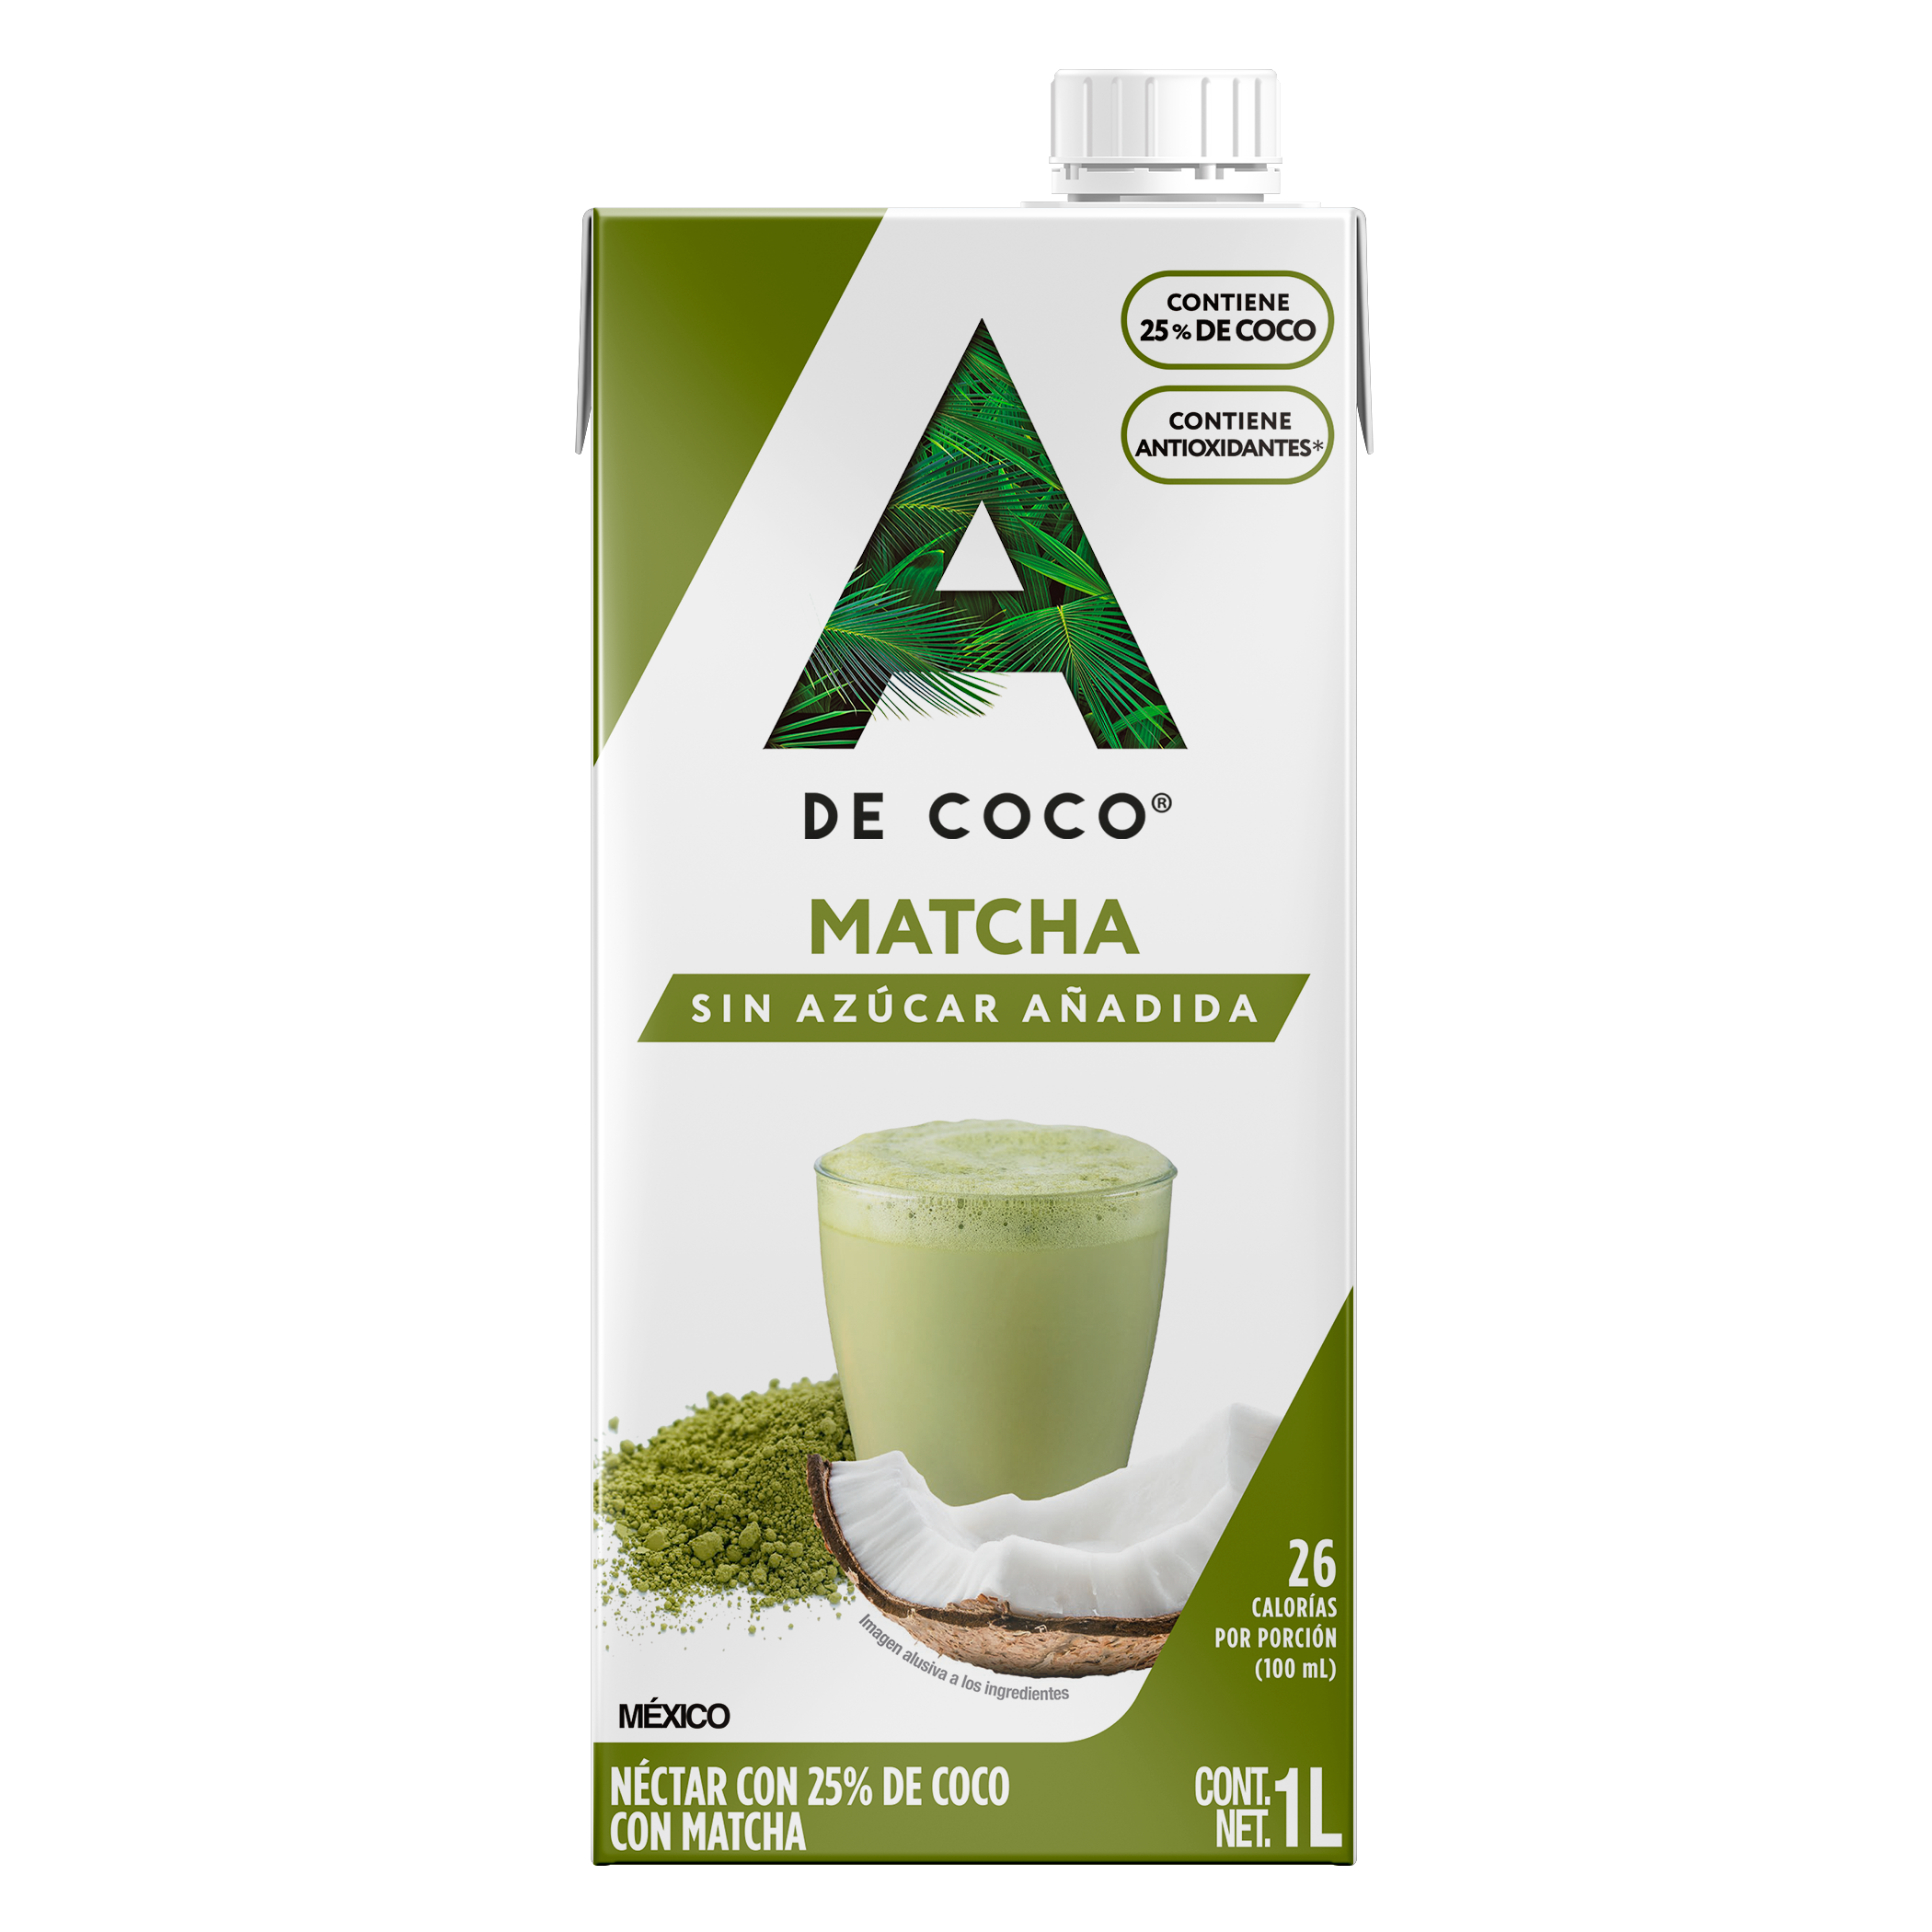 Aceite de Coco sin Sabor y sin Olor 420 ml. – A de Coco